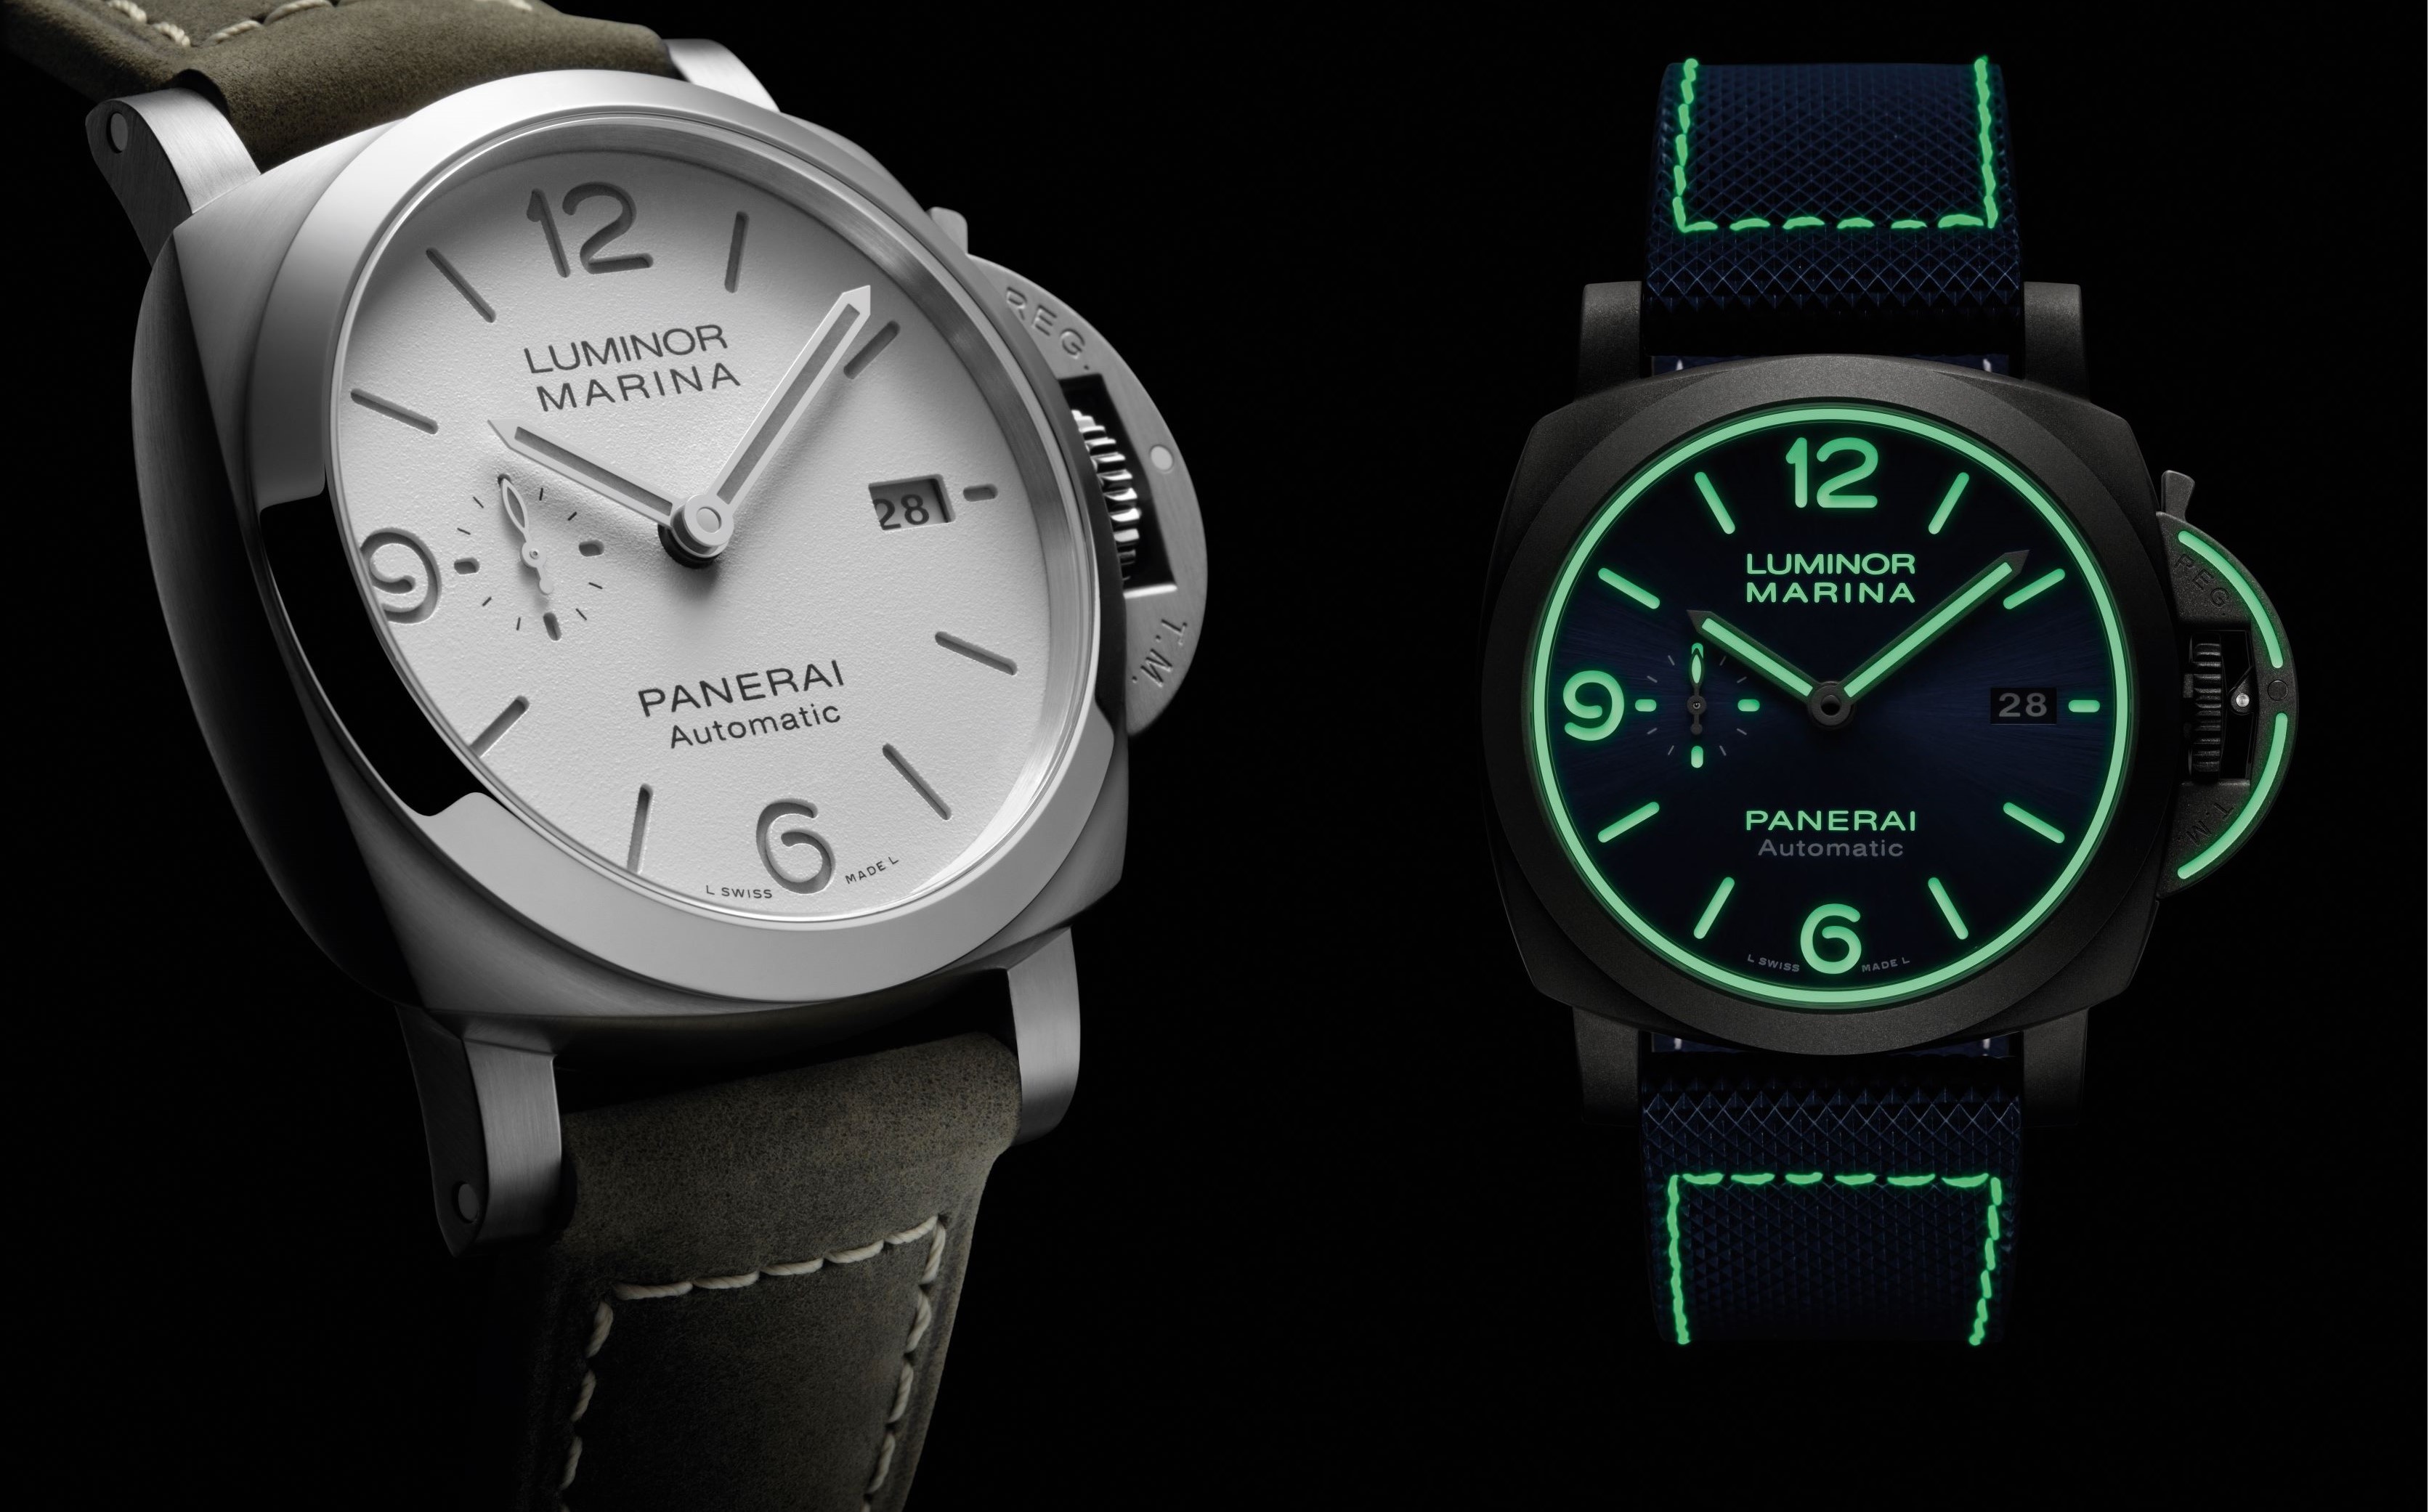 左圖：Luminor Marina 腕錶（PAM01314）是為品牌首次讓三明治錶盤換裝白色登場，數字時標以優雅的淺灰色浮現如蛋殼般細緻的錶面上，搭配精鋼錶殼與砂色襯米色縫線錶帶，整體洋溢斯文颯爽氣質。右圖：以大功率光纖鐳射把鈦金屬粉末燒結成厚度僅為 30 微米（0.03毫米）的薄層，並且以類似 3D 列印方式將薄層逐漸堆積定型，打造出整體腕錶（含錶帶）只有 100 公克的 Luminor Marina 腕錶（PAM01117）。